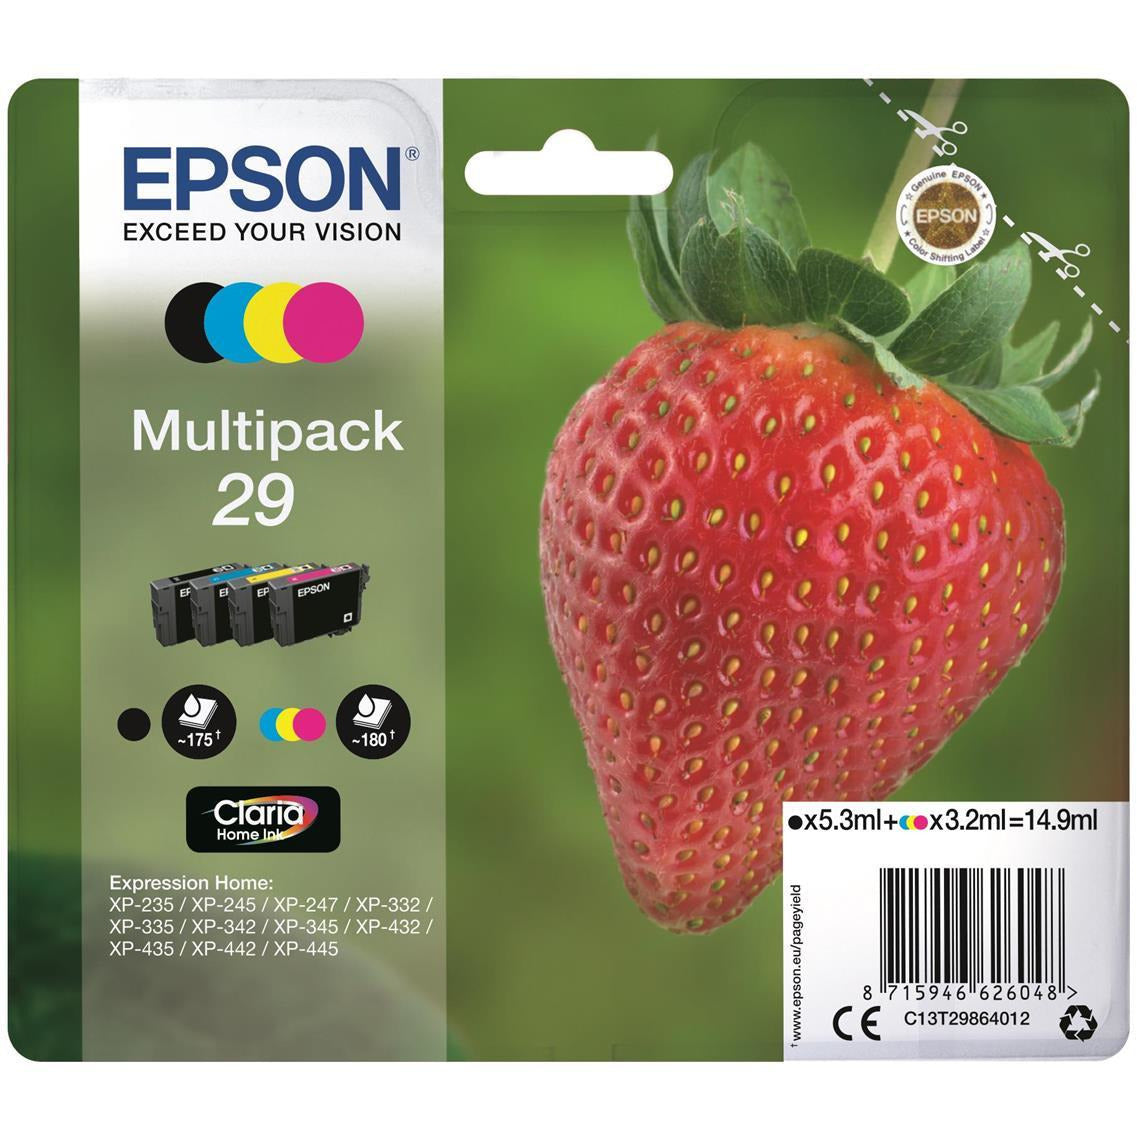 Epson Strawberry 29 (svart 5.3 ml + blátt, rautt, gult 3.2 ml) Claria Home pakki blekhylkis